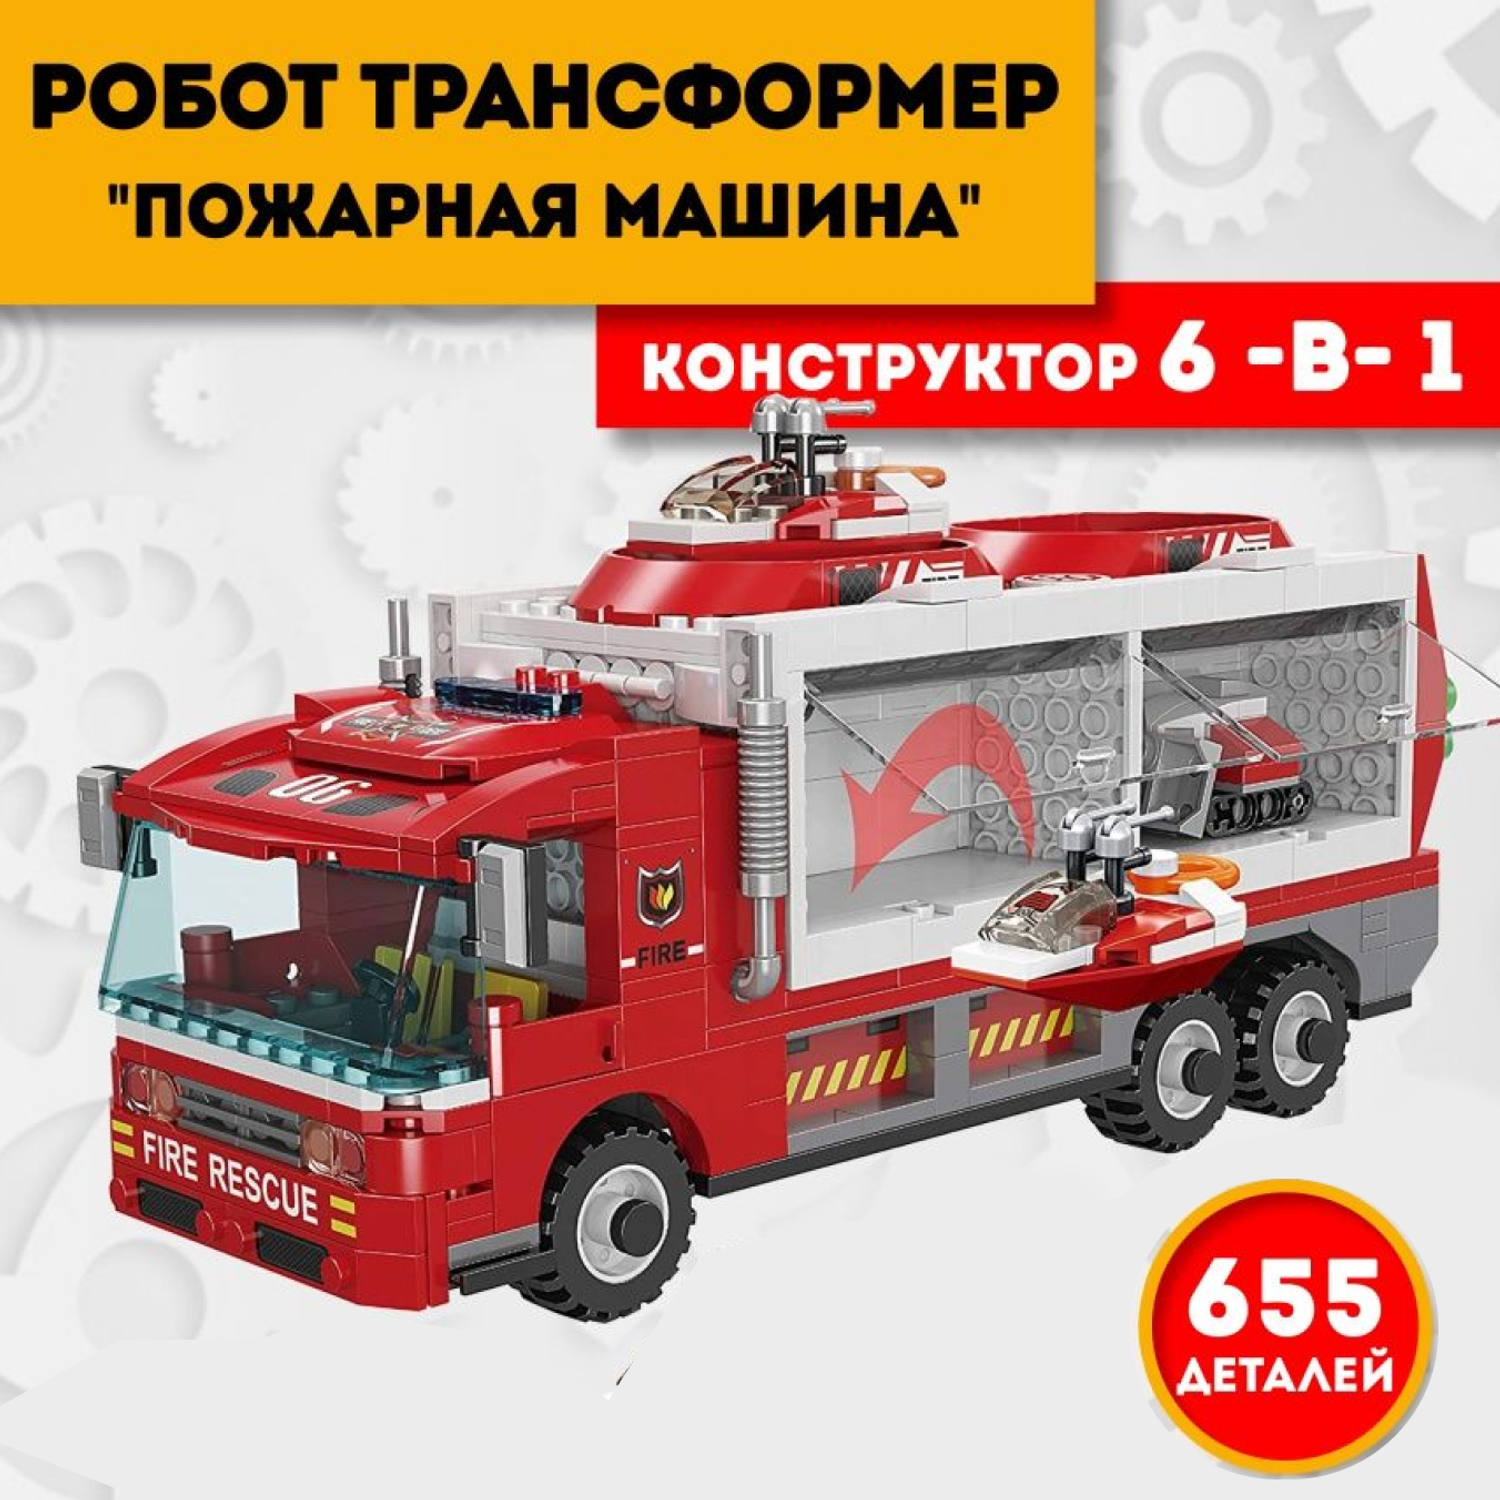 Конструктор робот трансформер ТЕХНО пожарная машина 6 в 1 машинки игрушки 655 деталей - фото 1